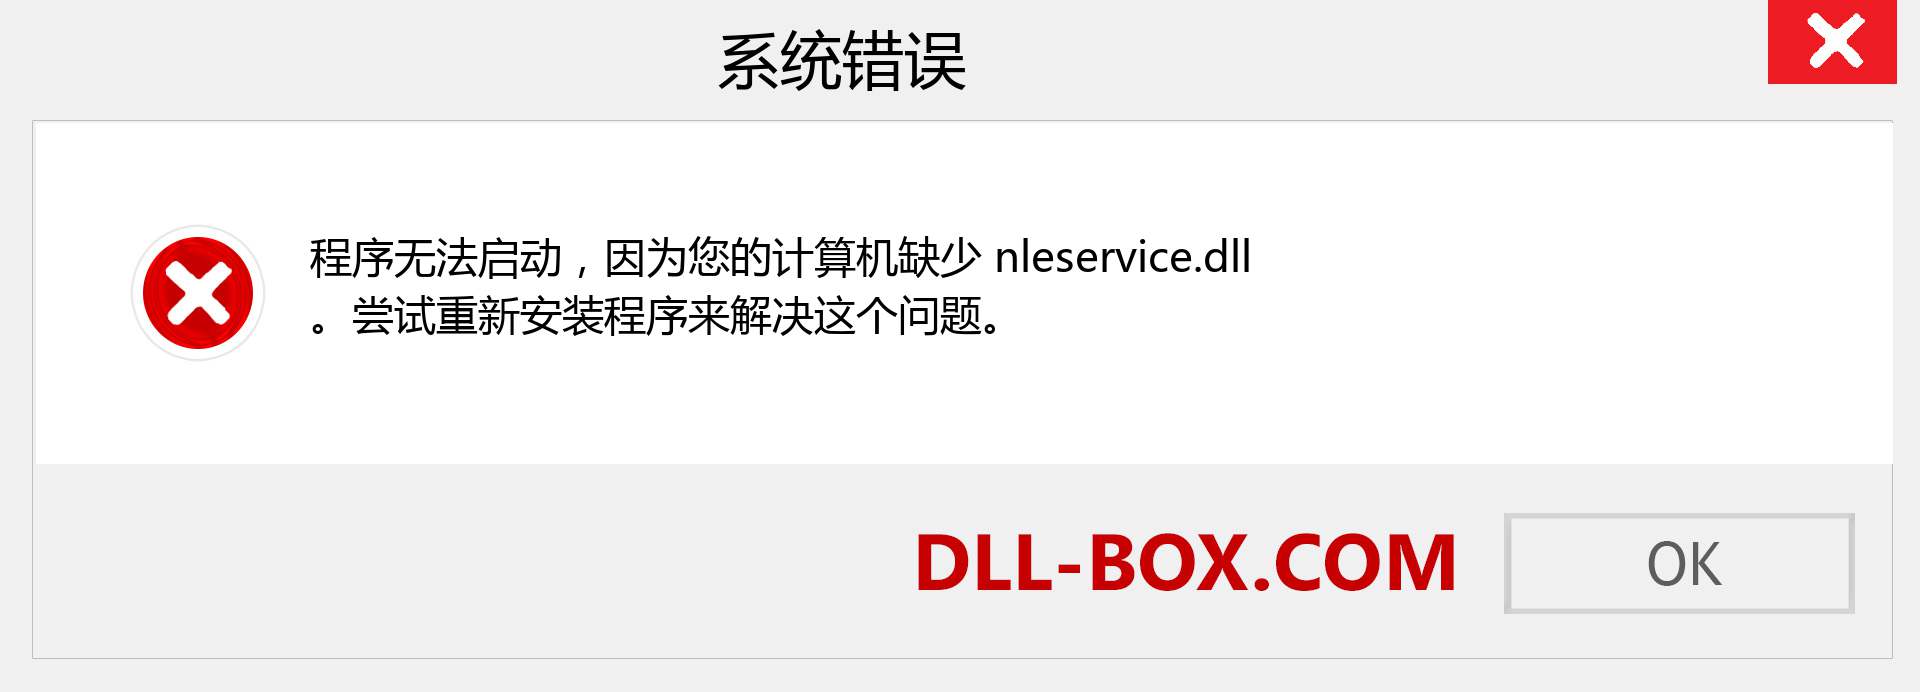 nleservice.dll 文件丢失？。 适用于 Windows 7、8、10 的下载 - 修复 Windows、照片、图像上的 nleservice dll 丢失错误